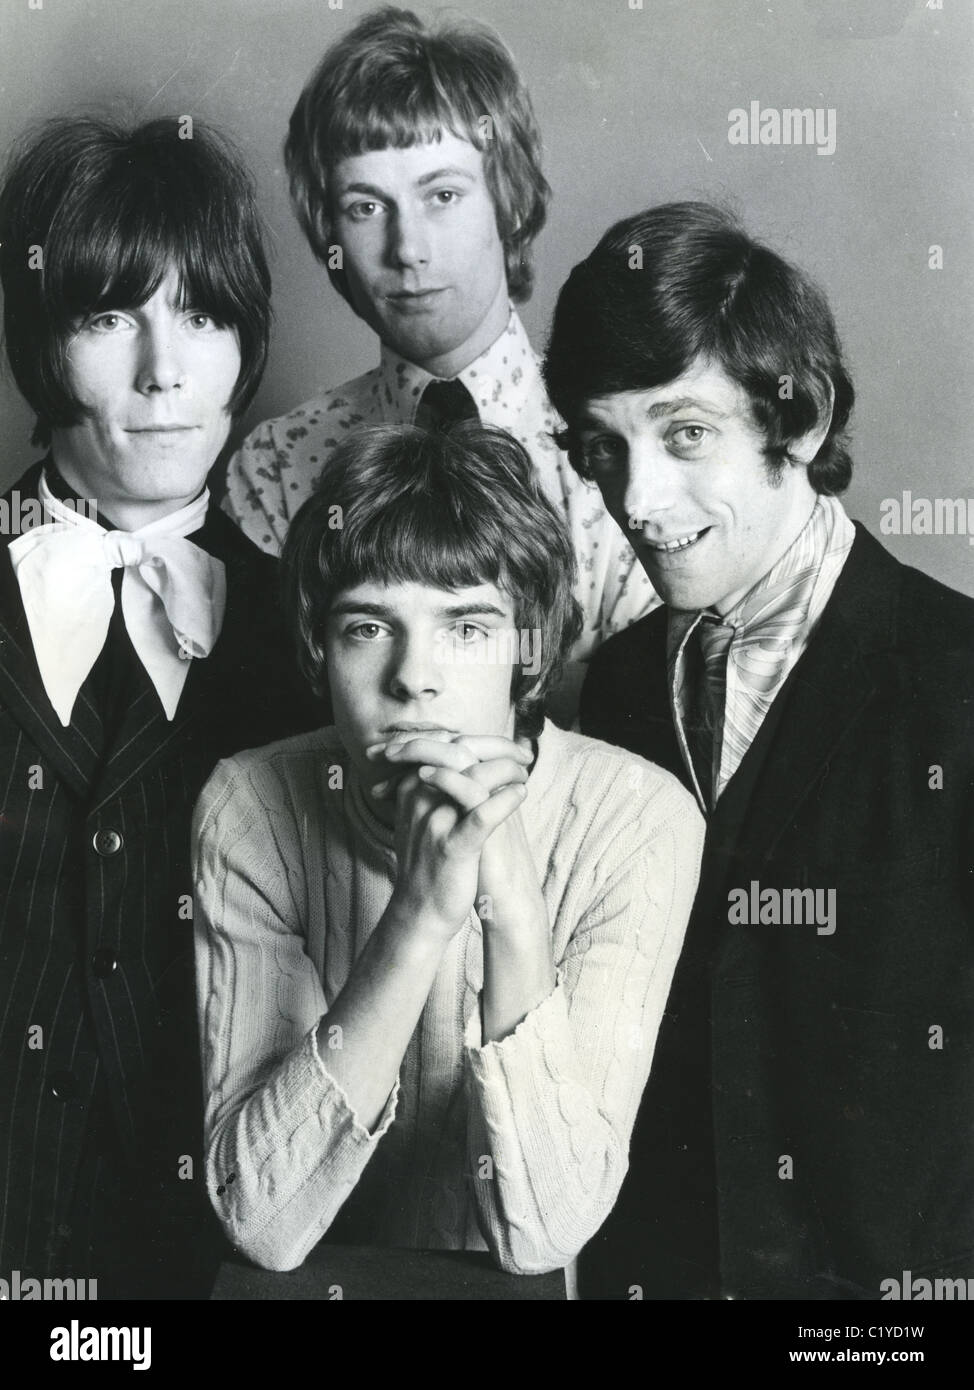 Le troupeau groupe pop britannique en octobre 1967 dans le sens horaire à partir du haut : Gary Taylor, Andrew Steel, Peter Frampton, Andy Brown. Photo Tony Gale Banque D'Images